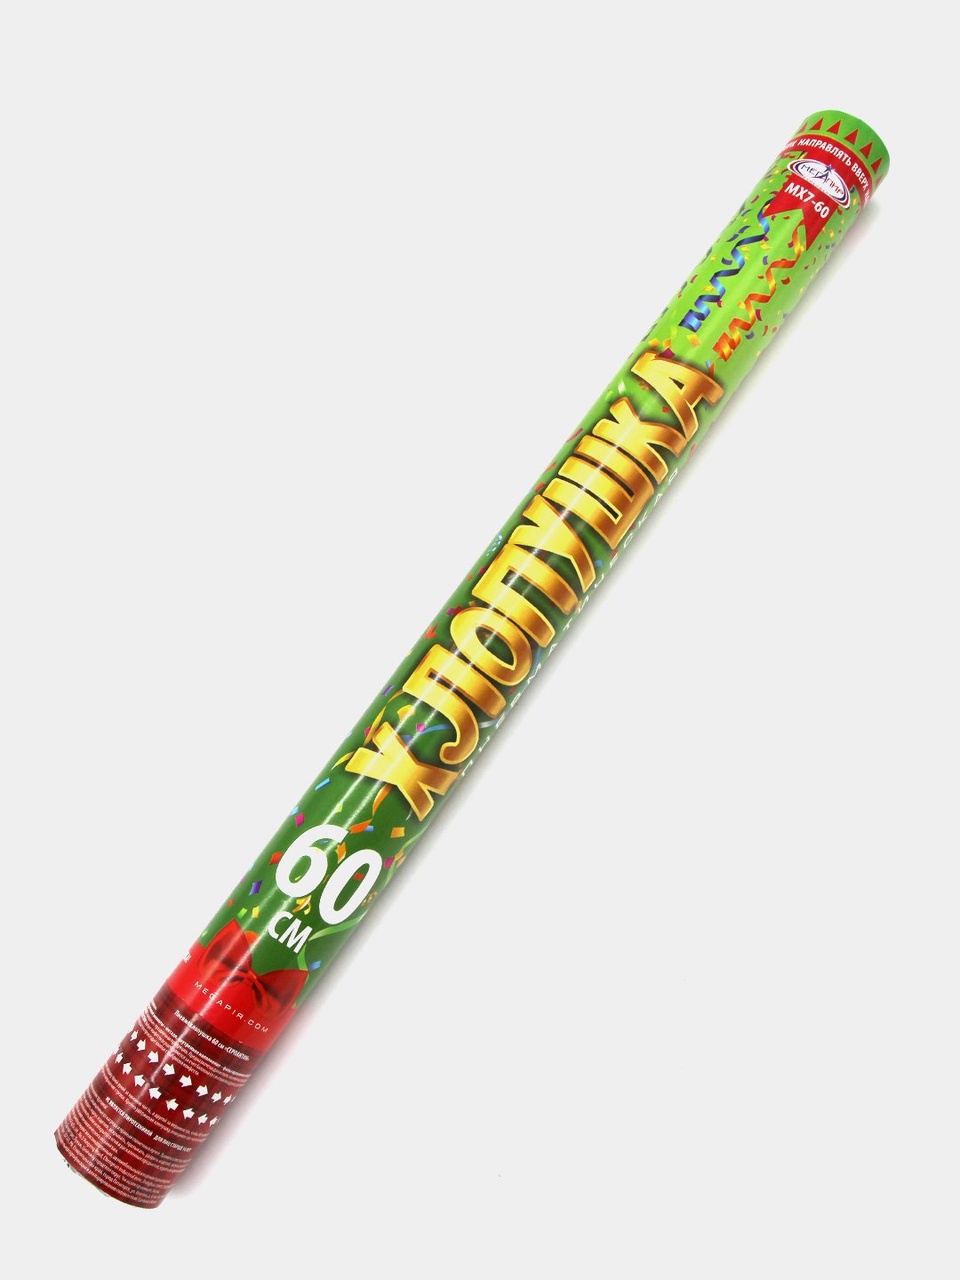 Пневматическая хлопушка 60 см конфетти серпантин длинные ленты из фольги МХ7-60 - 290 ₽, заказать онлайн.